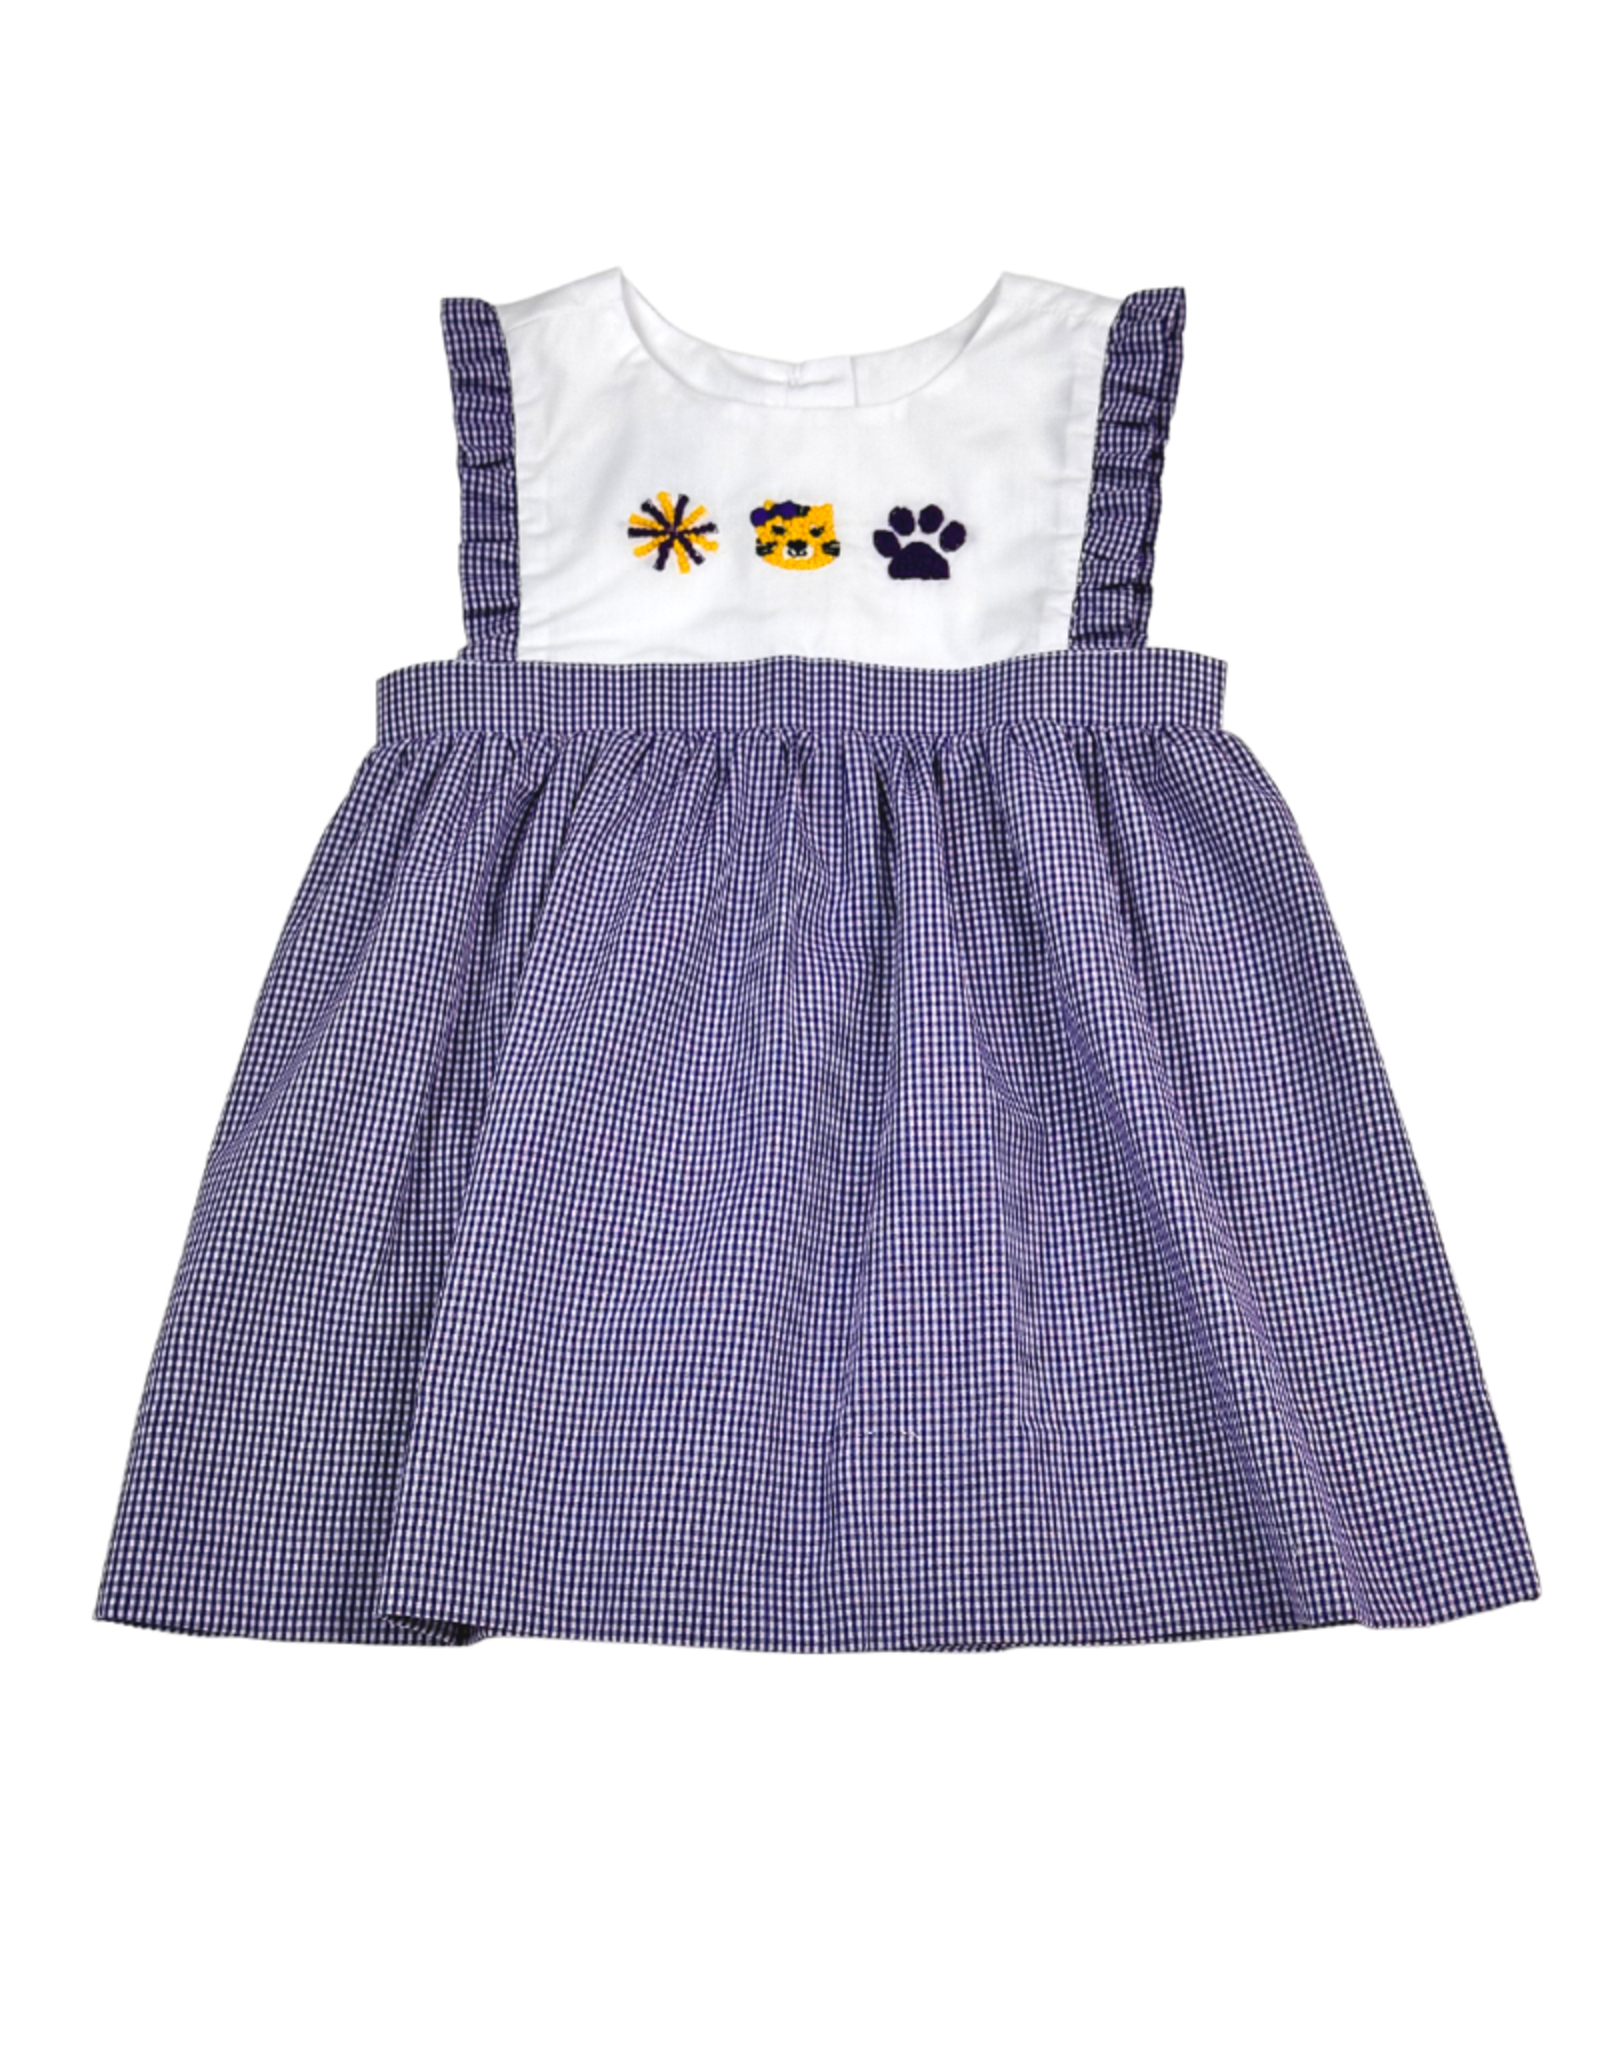 Krewe Kids Purple Tigers French Knot Dress